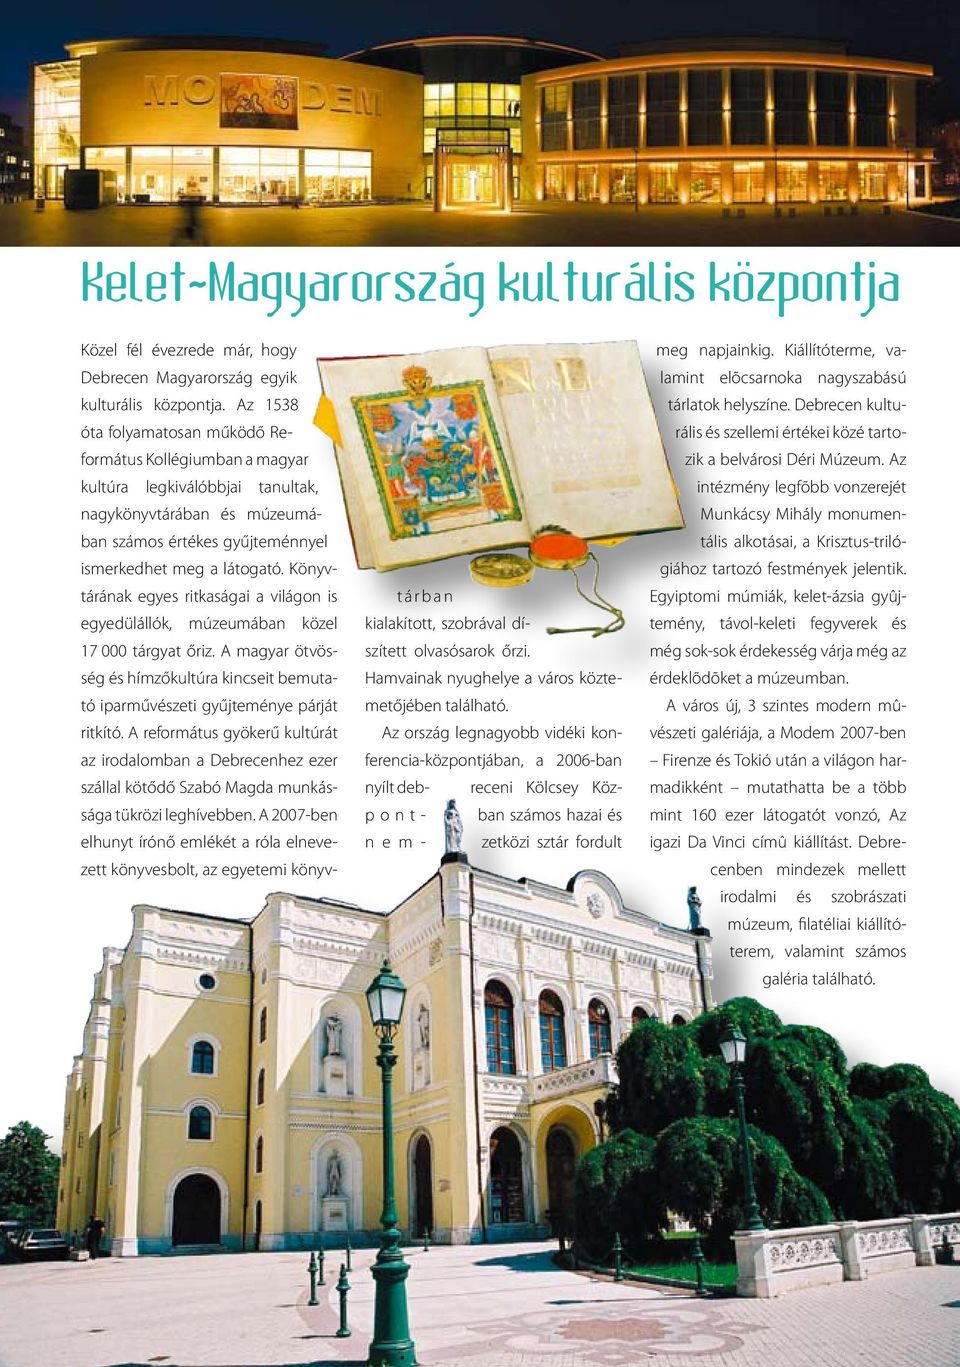 Könyvtárának egyes ritkaságai a világon is egyedülállók, múzeumában közel 17 000 tárgyat őriz. A magyar ötvösség és hímzőkultúra kincseit bemutató iparművészeti gyűjteménye párját ritkító.